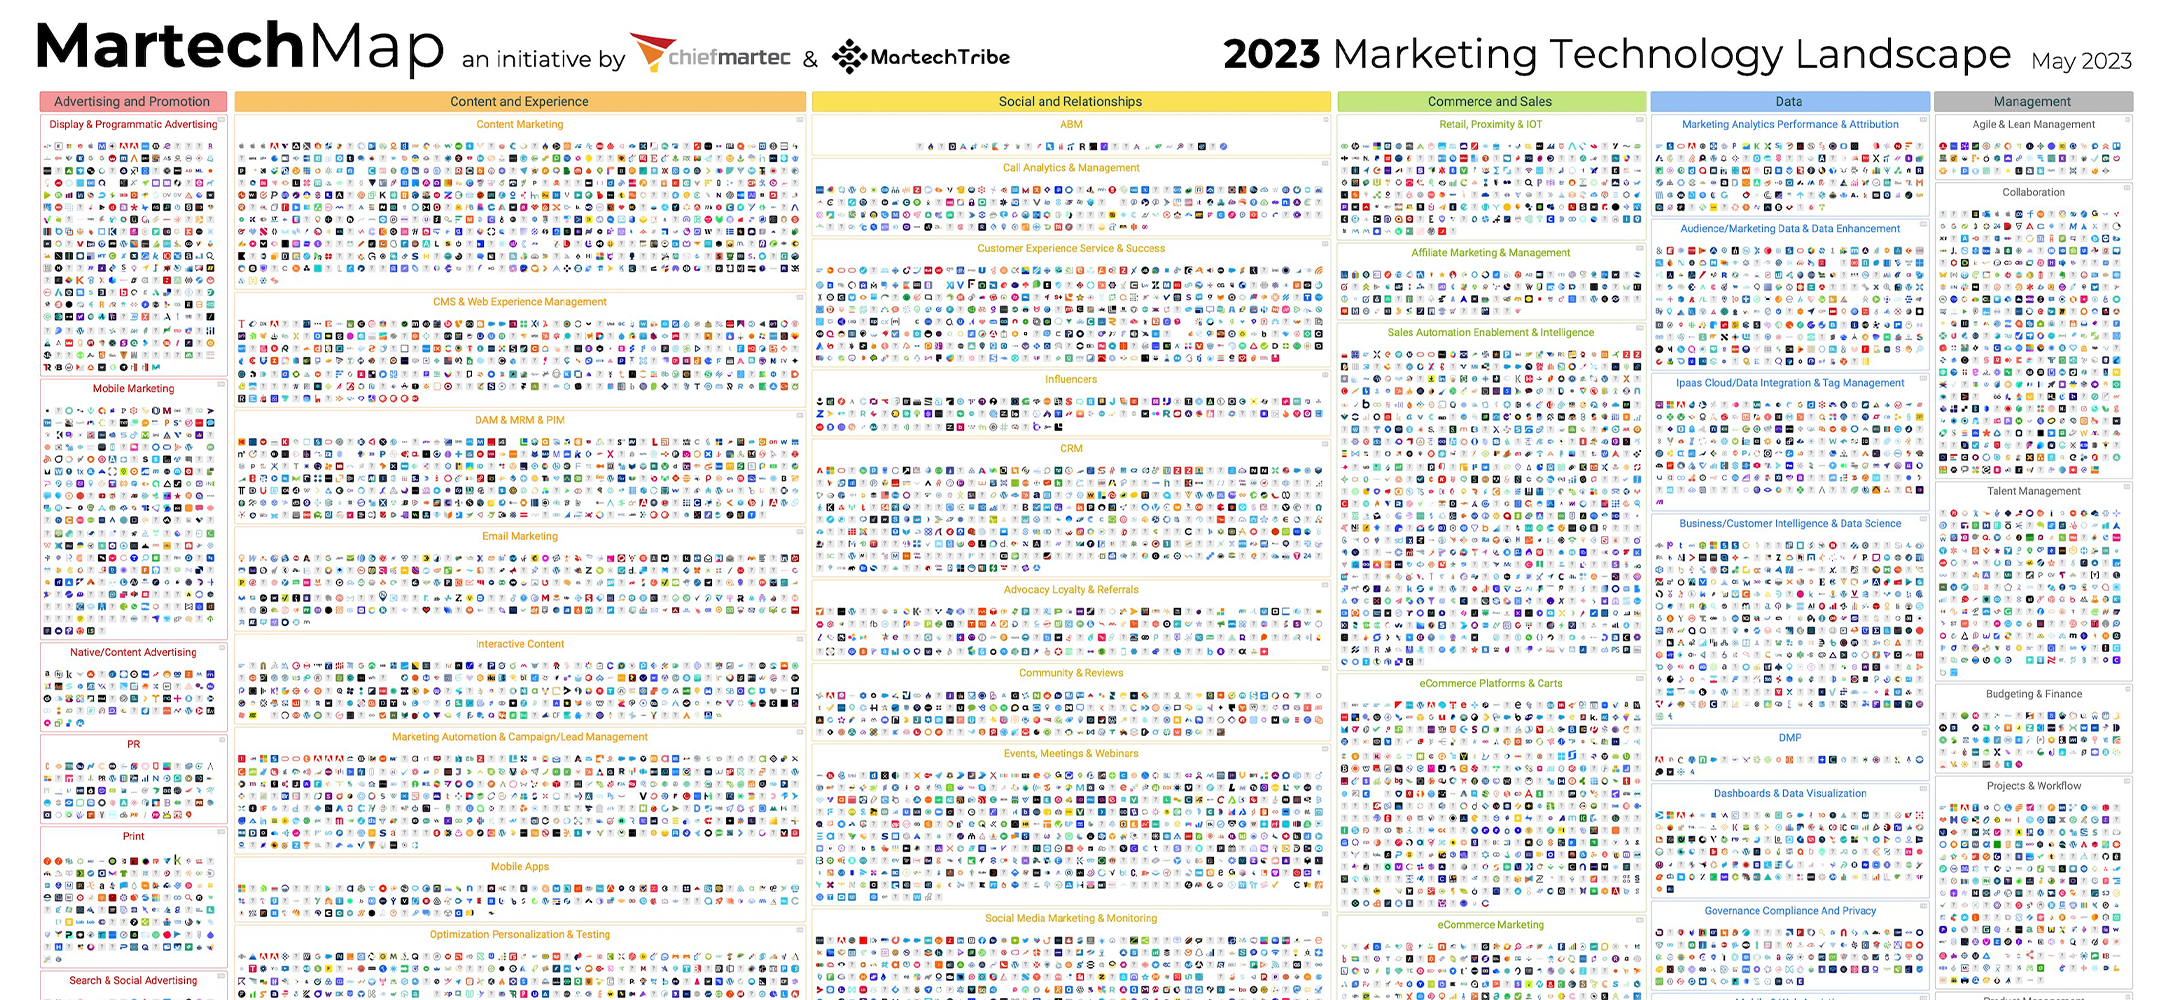 The 2023 Marketing Technology Landscape